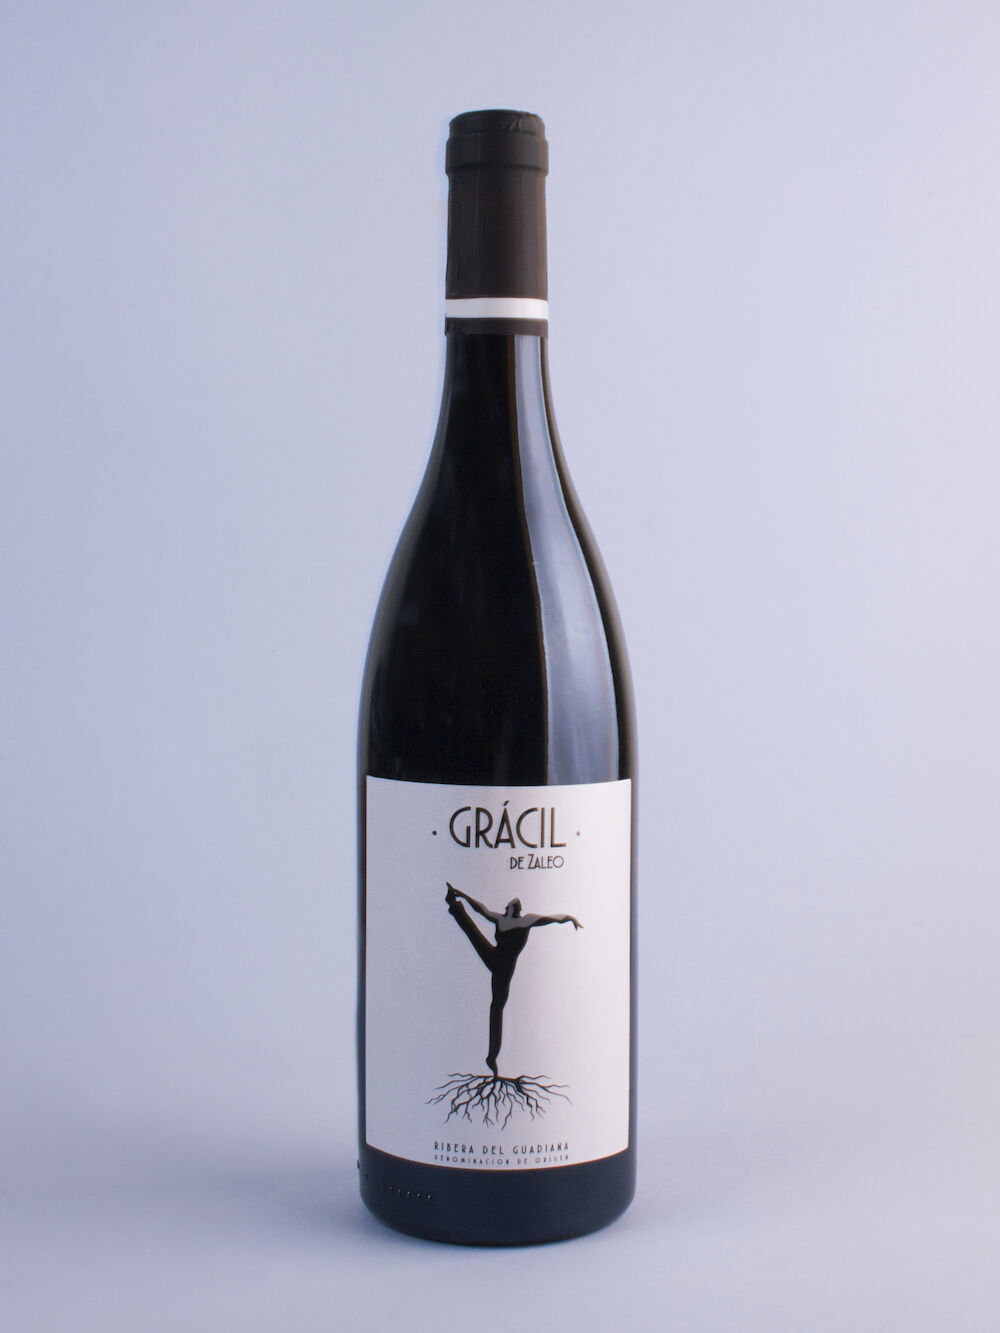 Siete vinos de Viñaoliva obtienen doce importantes premios internacionales